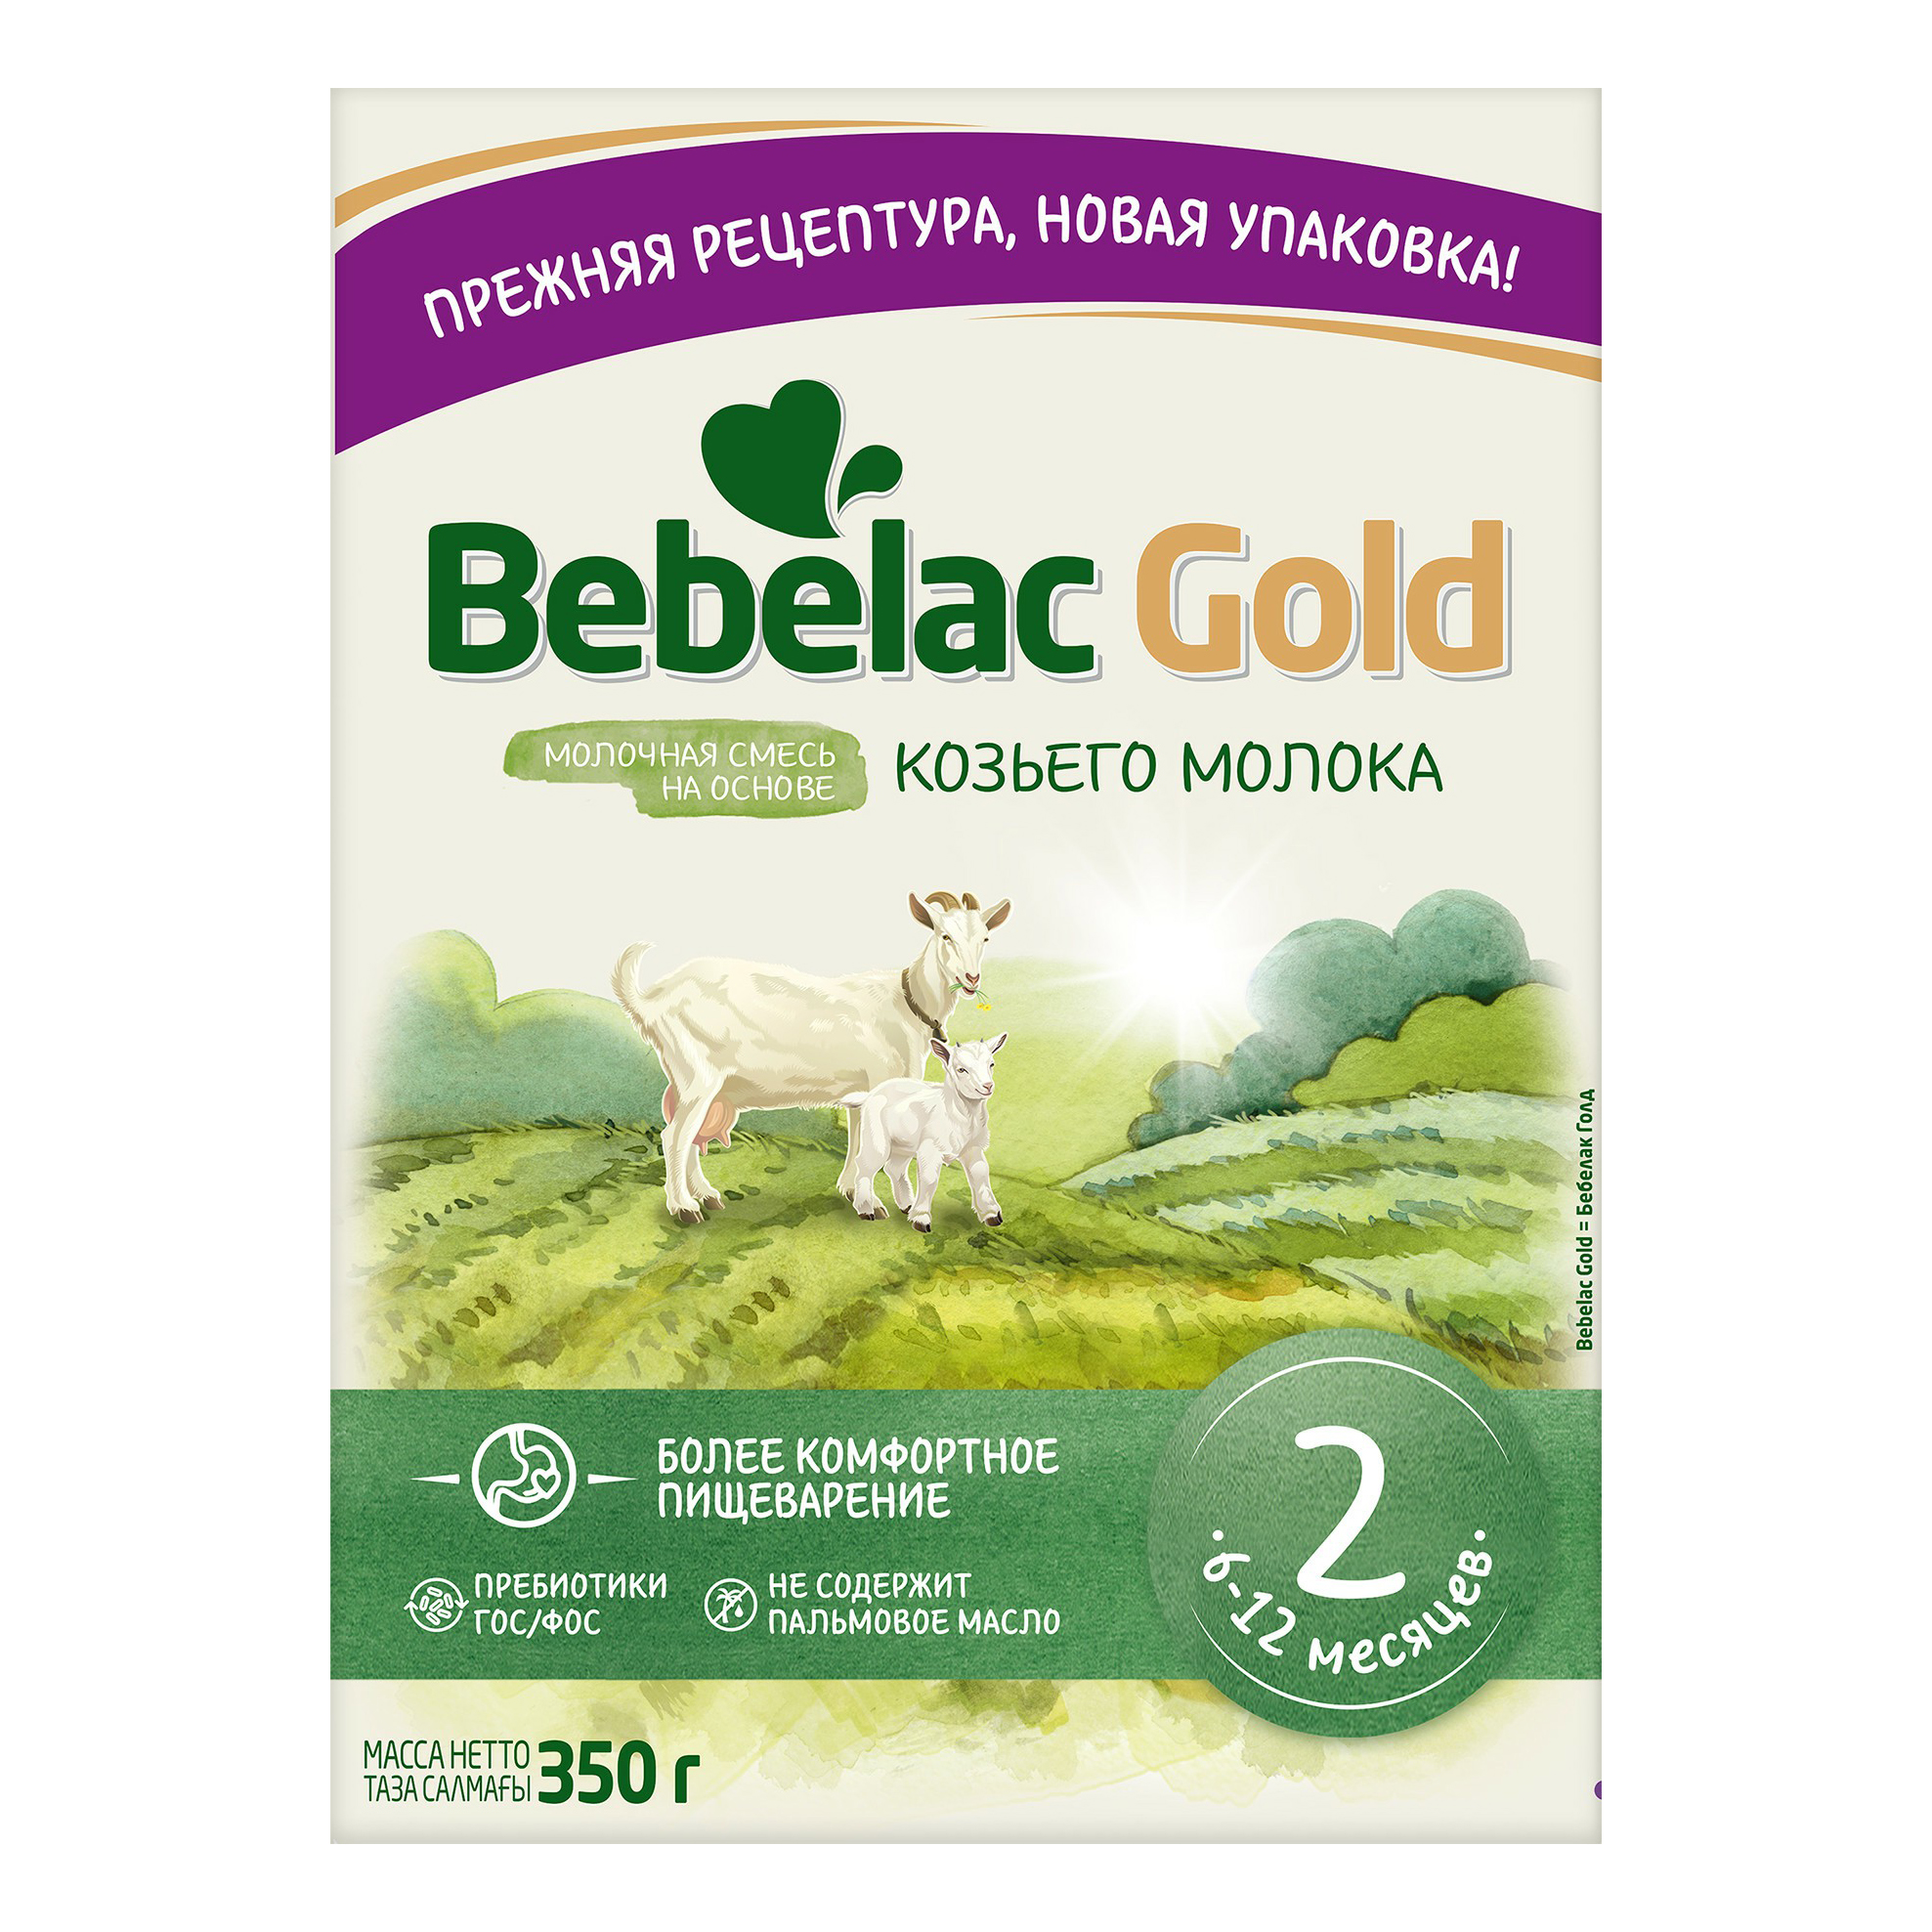 Детская смесь Bebelac Gold на основе козьего молока молочная сухая с 6 месяцев 350 г премиум spa носочки на основе натуральных масел